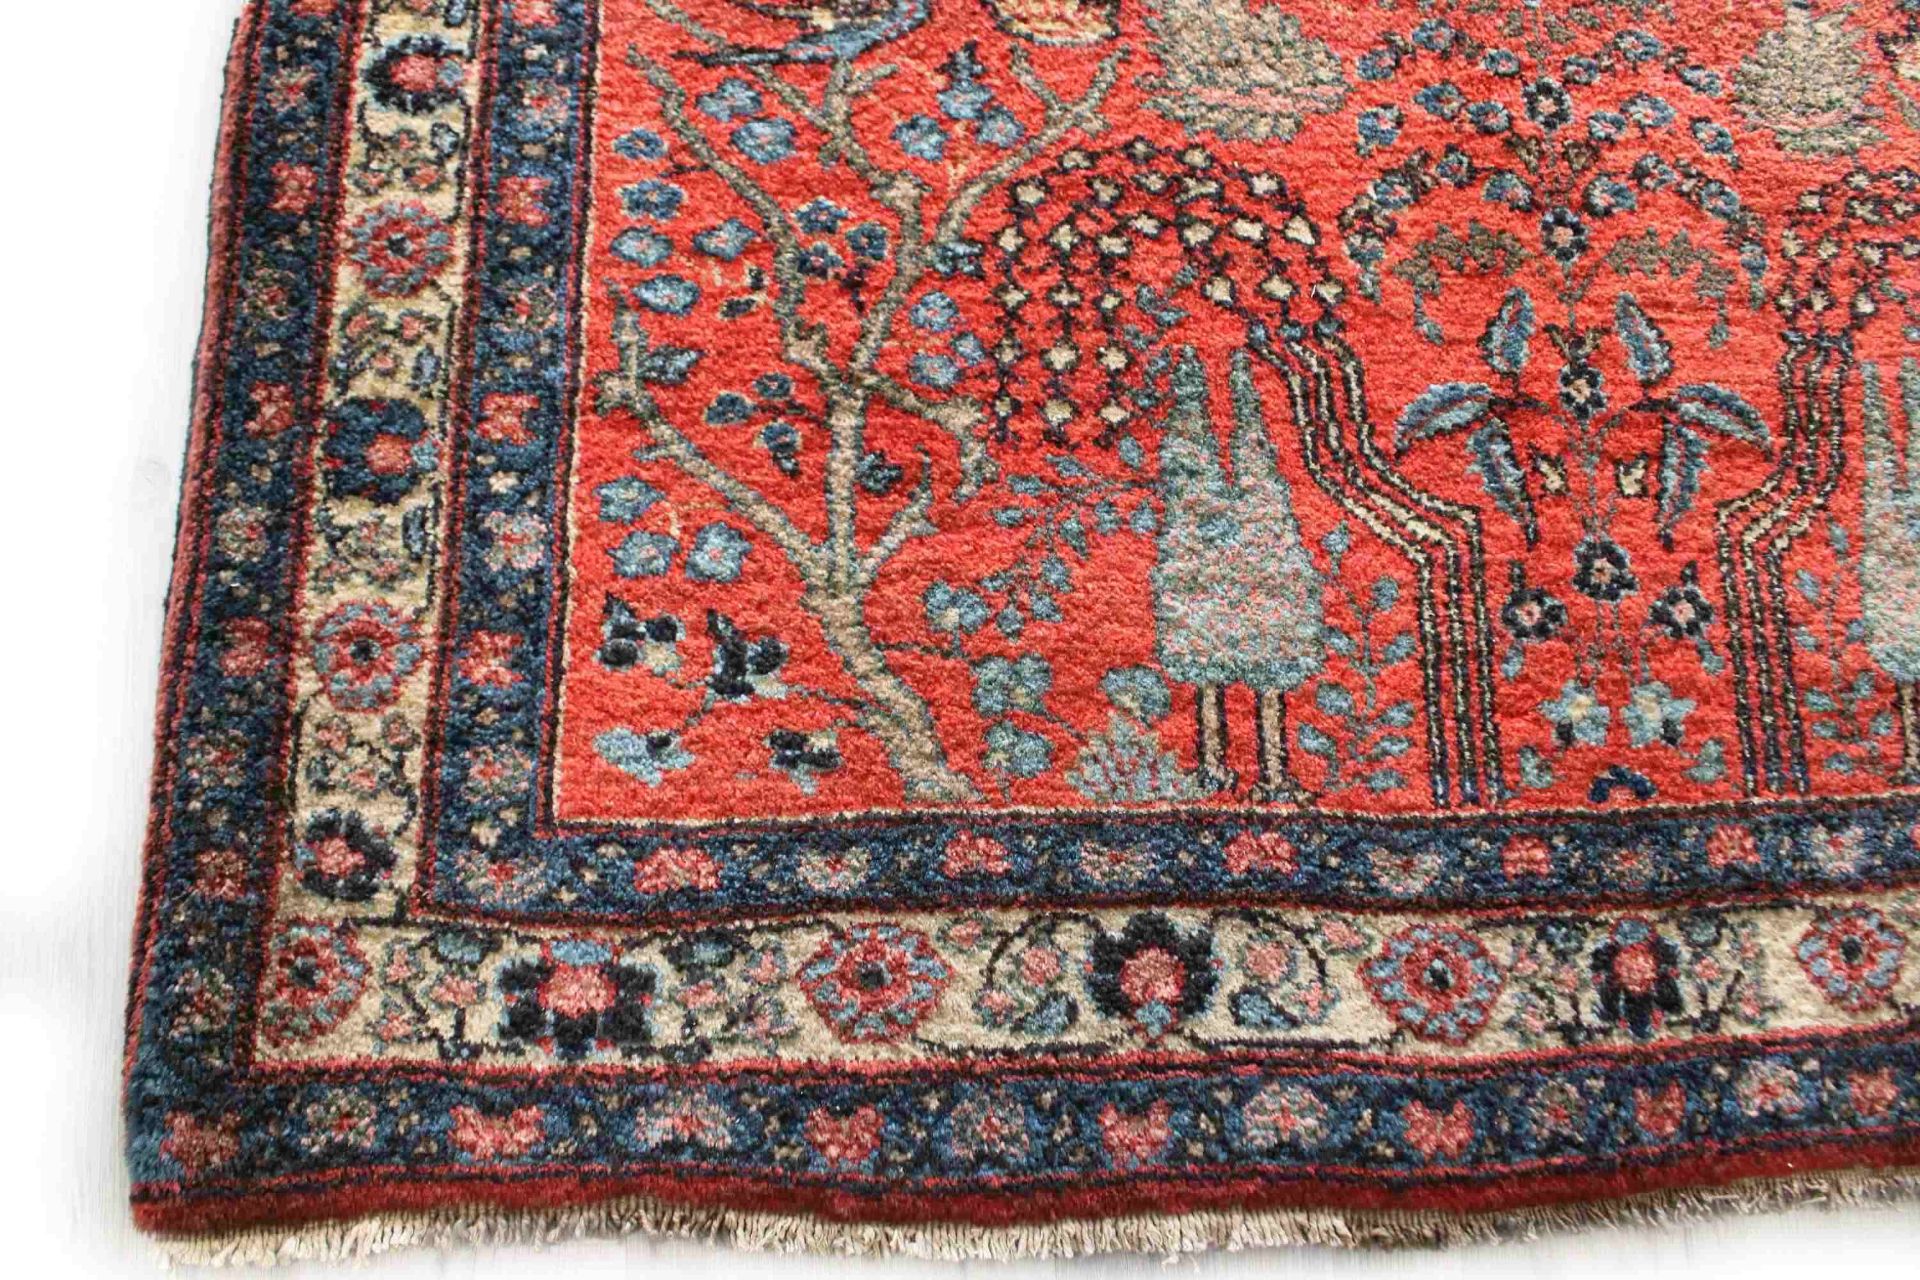 Kermanshah-Teppich, Maße: 140 x 189 cm. Guter Zustand, Abnutzungsspuren am Rand. - Bild 2 aus 3